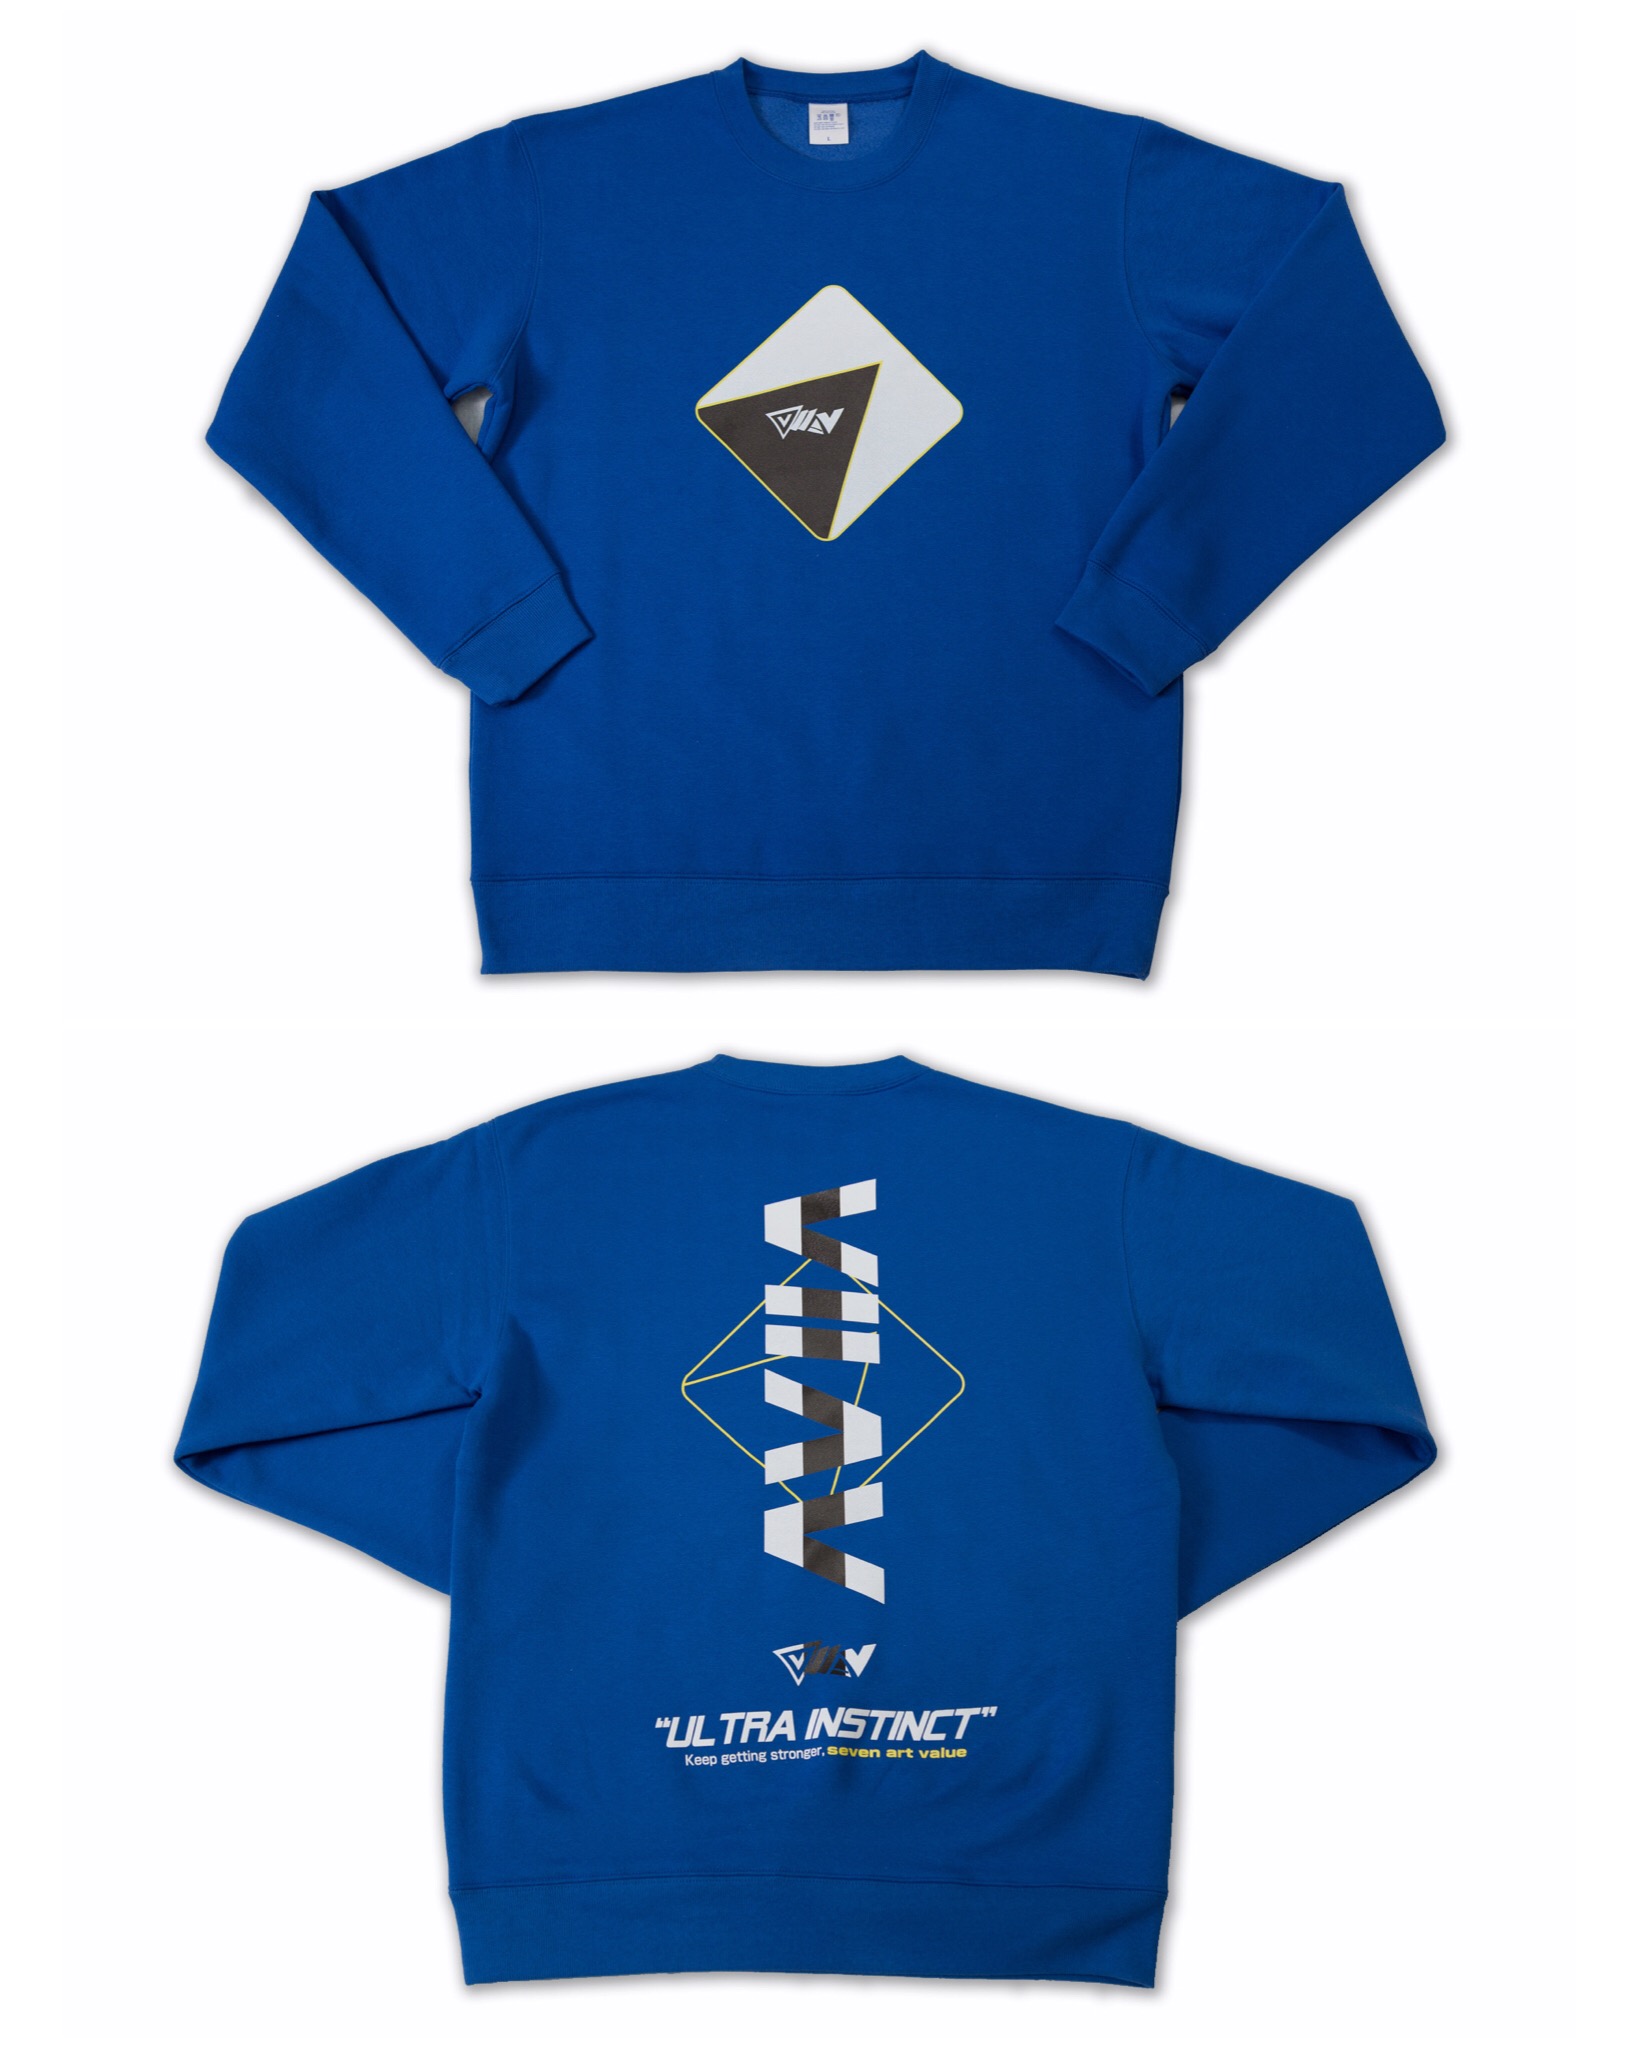 【Seven Art Value】”VIIAV” racing logo 10.0 Oz. crew neck / color: ROYAL BLUE